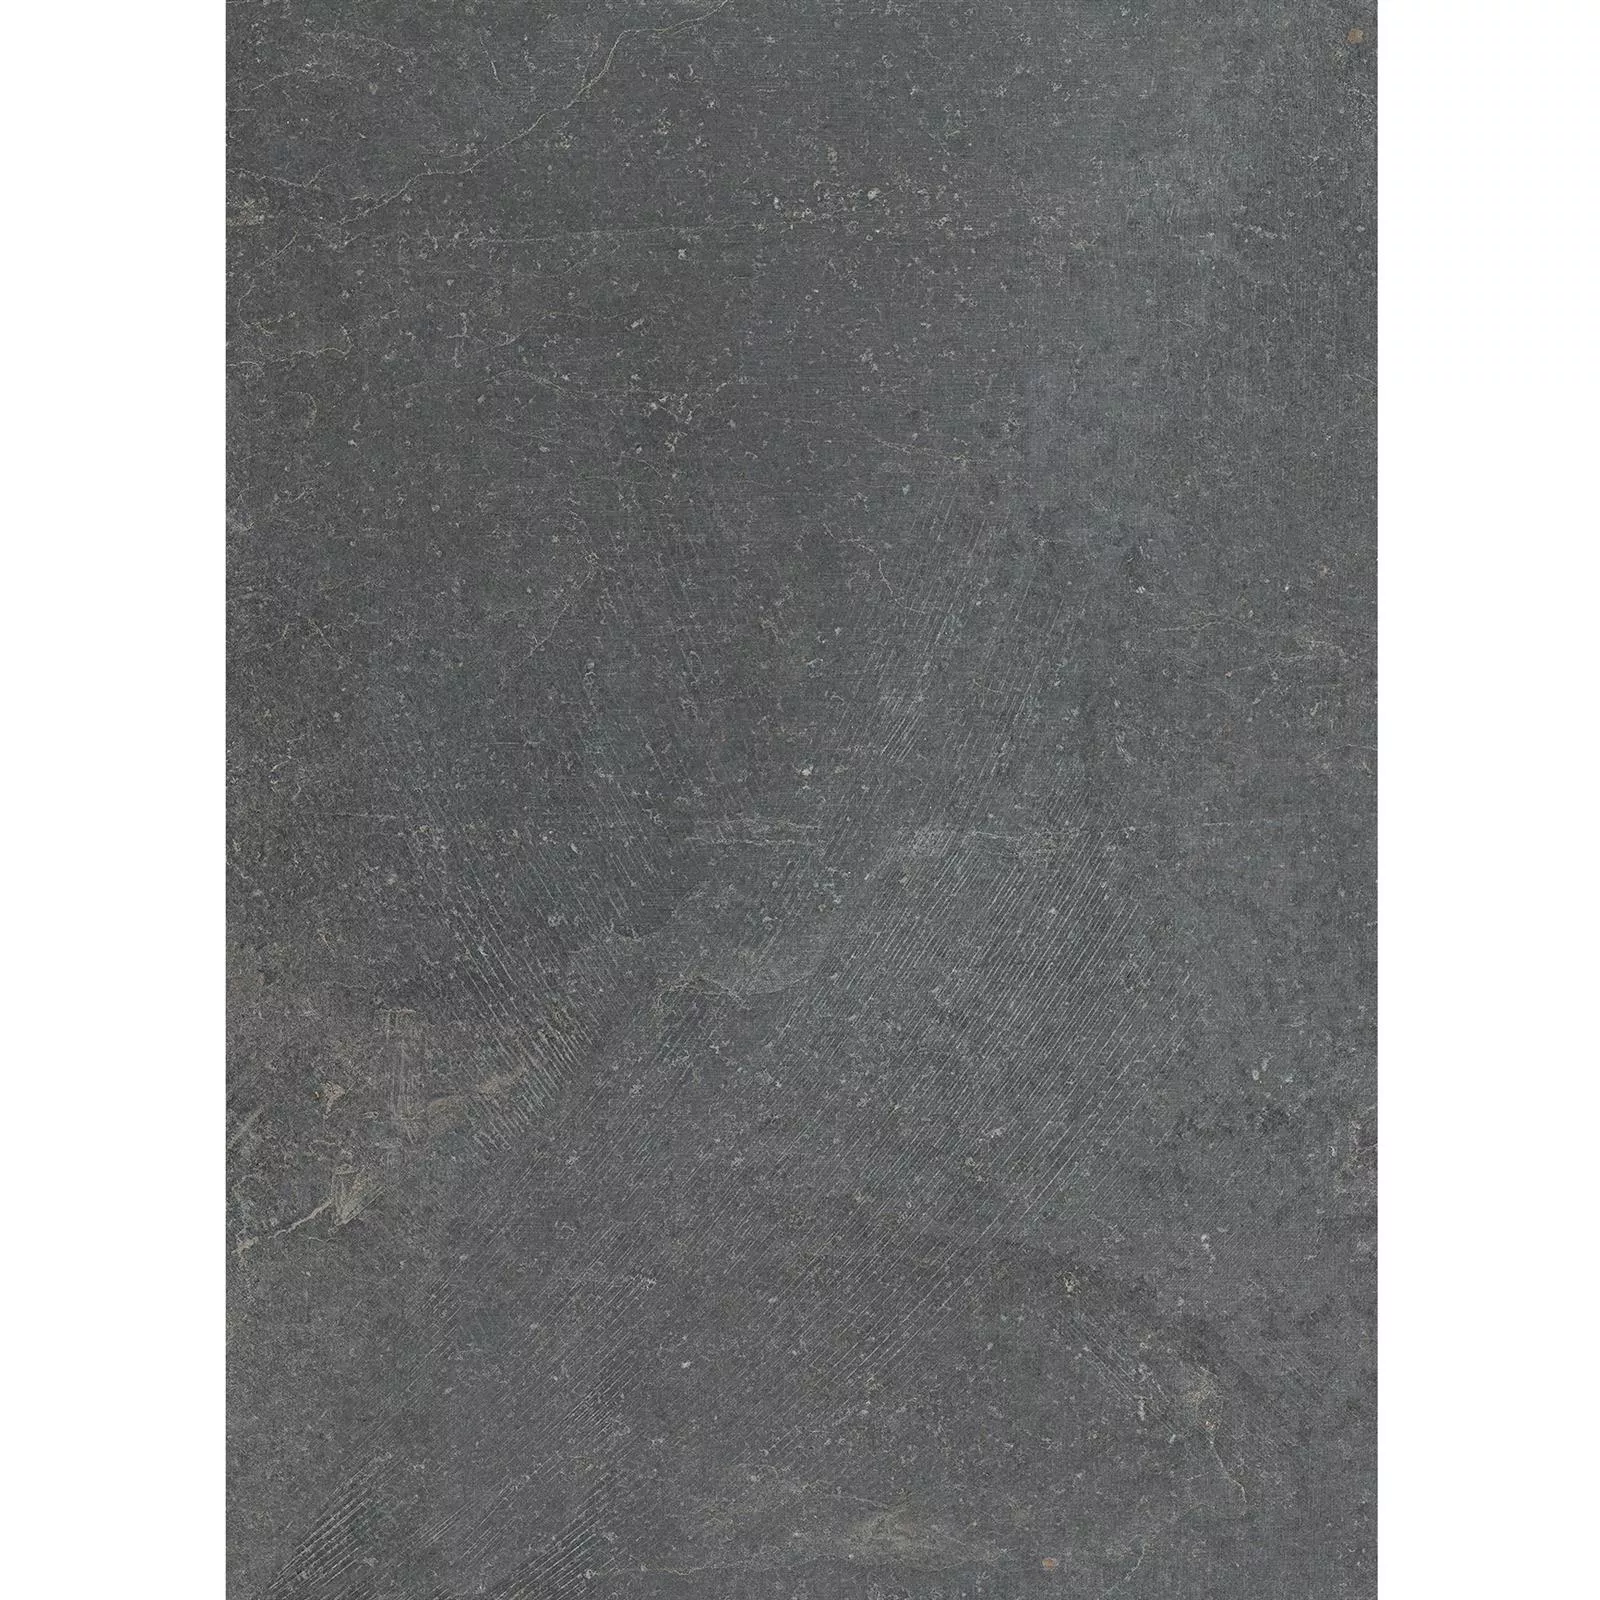 Muster Bodenfliesen Steinoptik Horizon Anthrazit 60x120cm